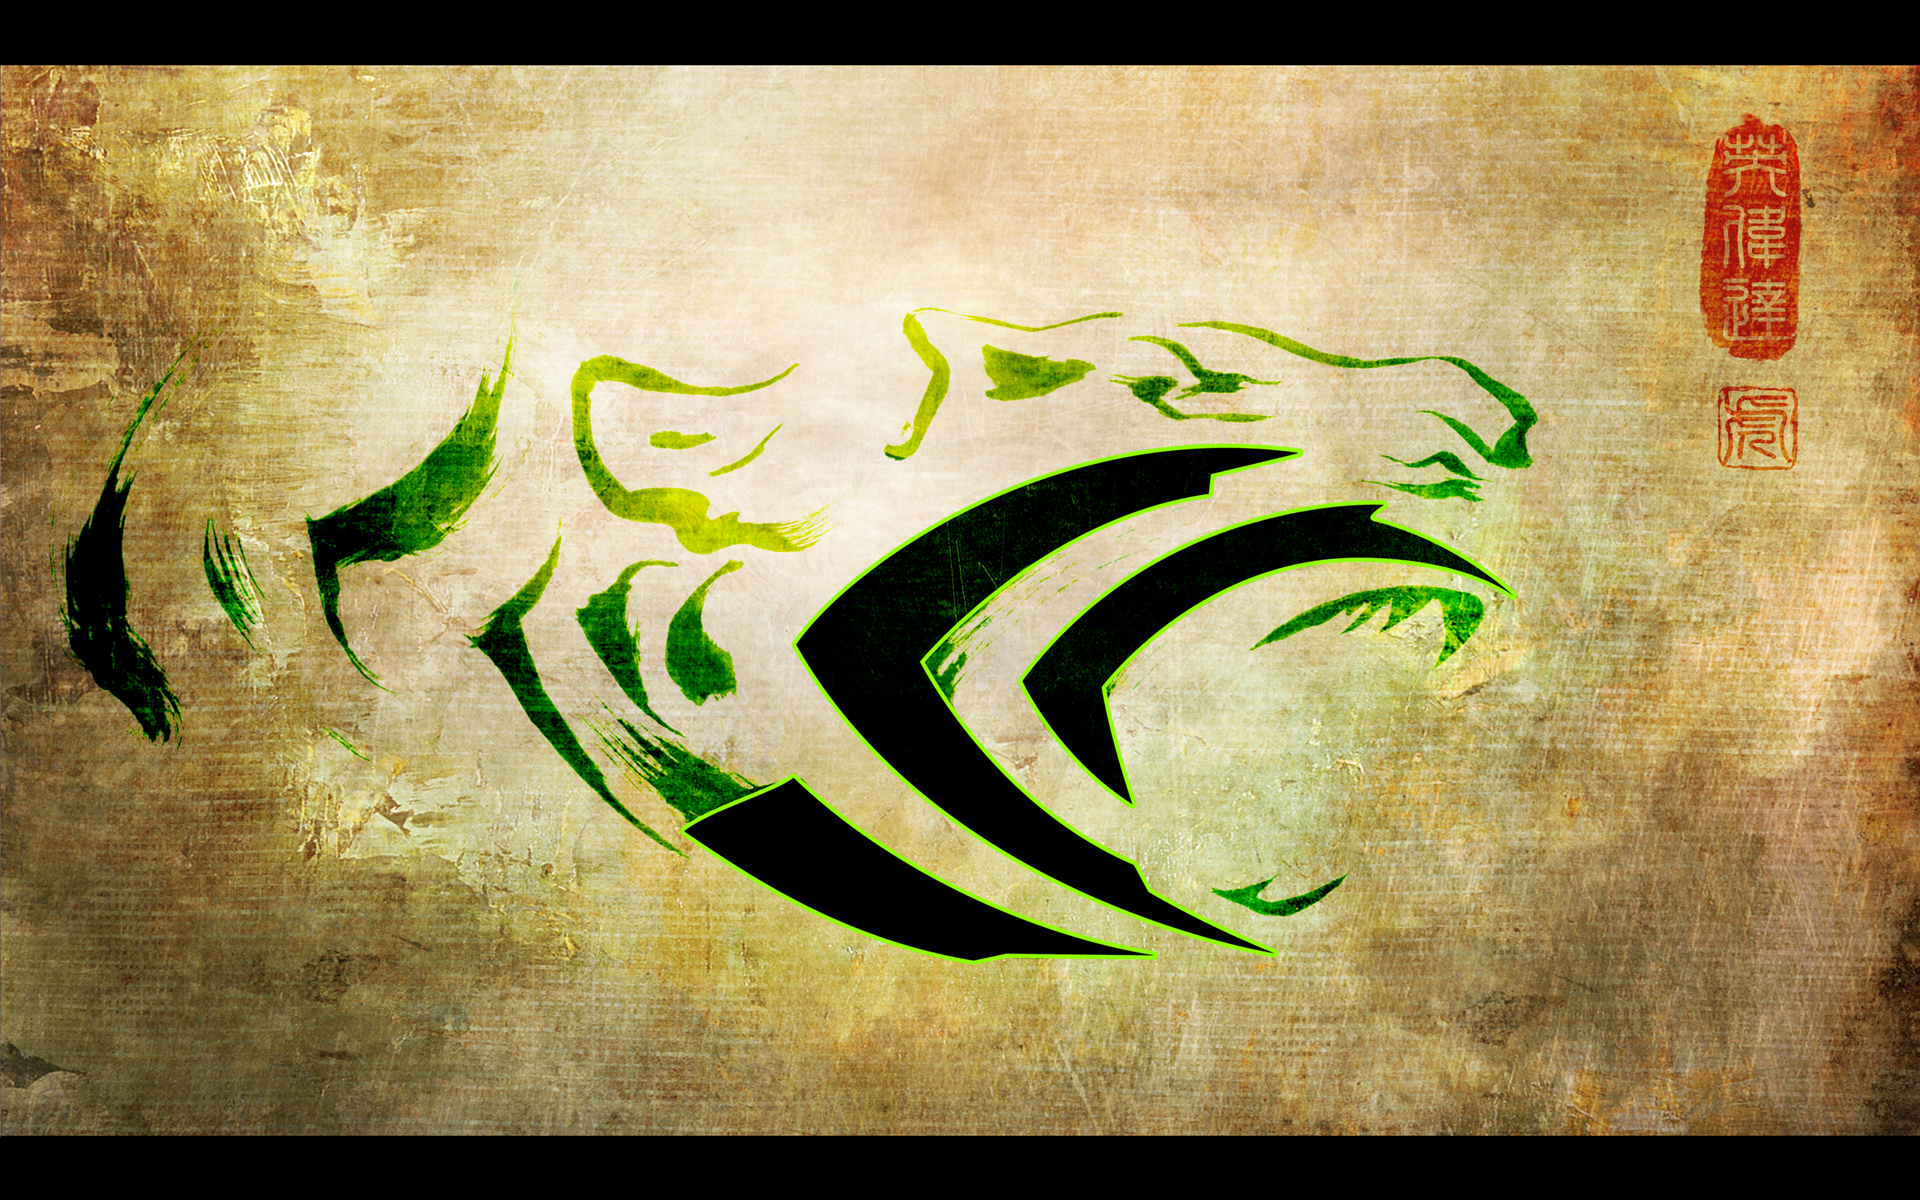 tigers, Nvidia, claws - desktop wallpaper